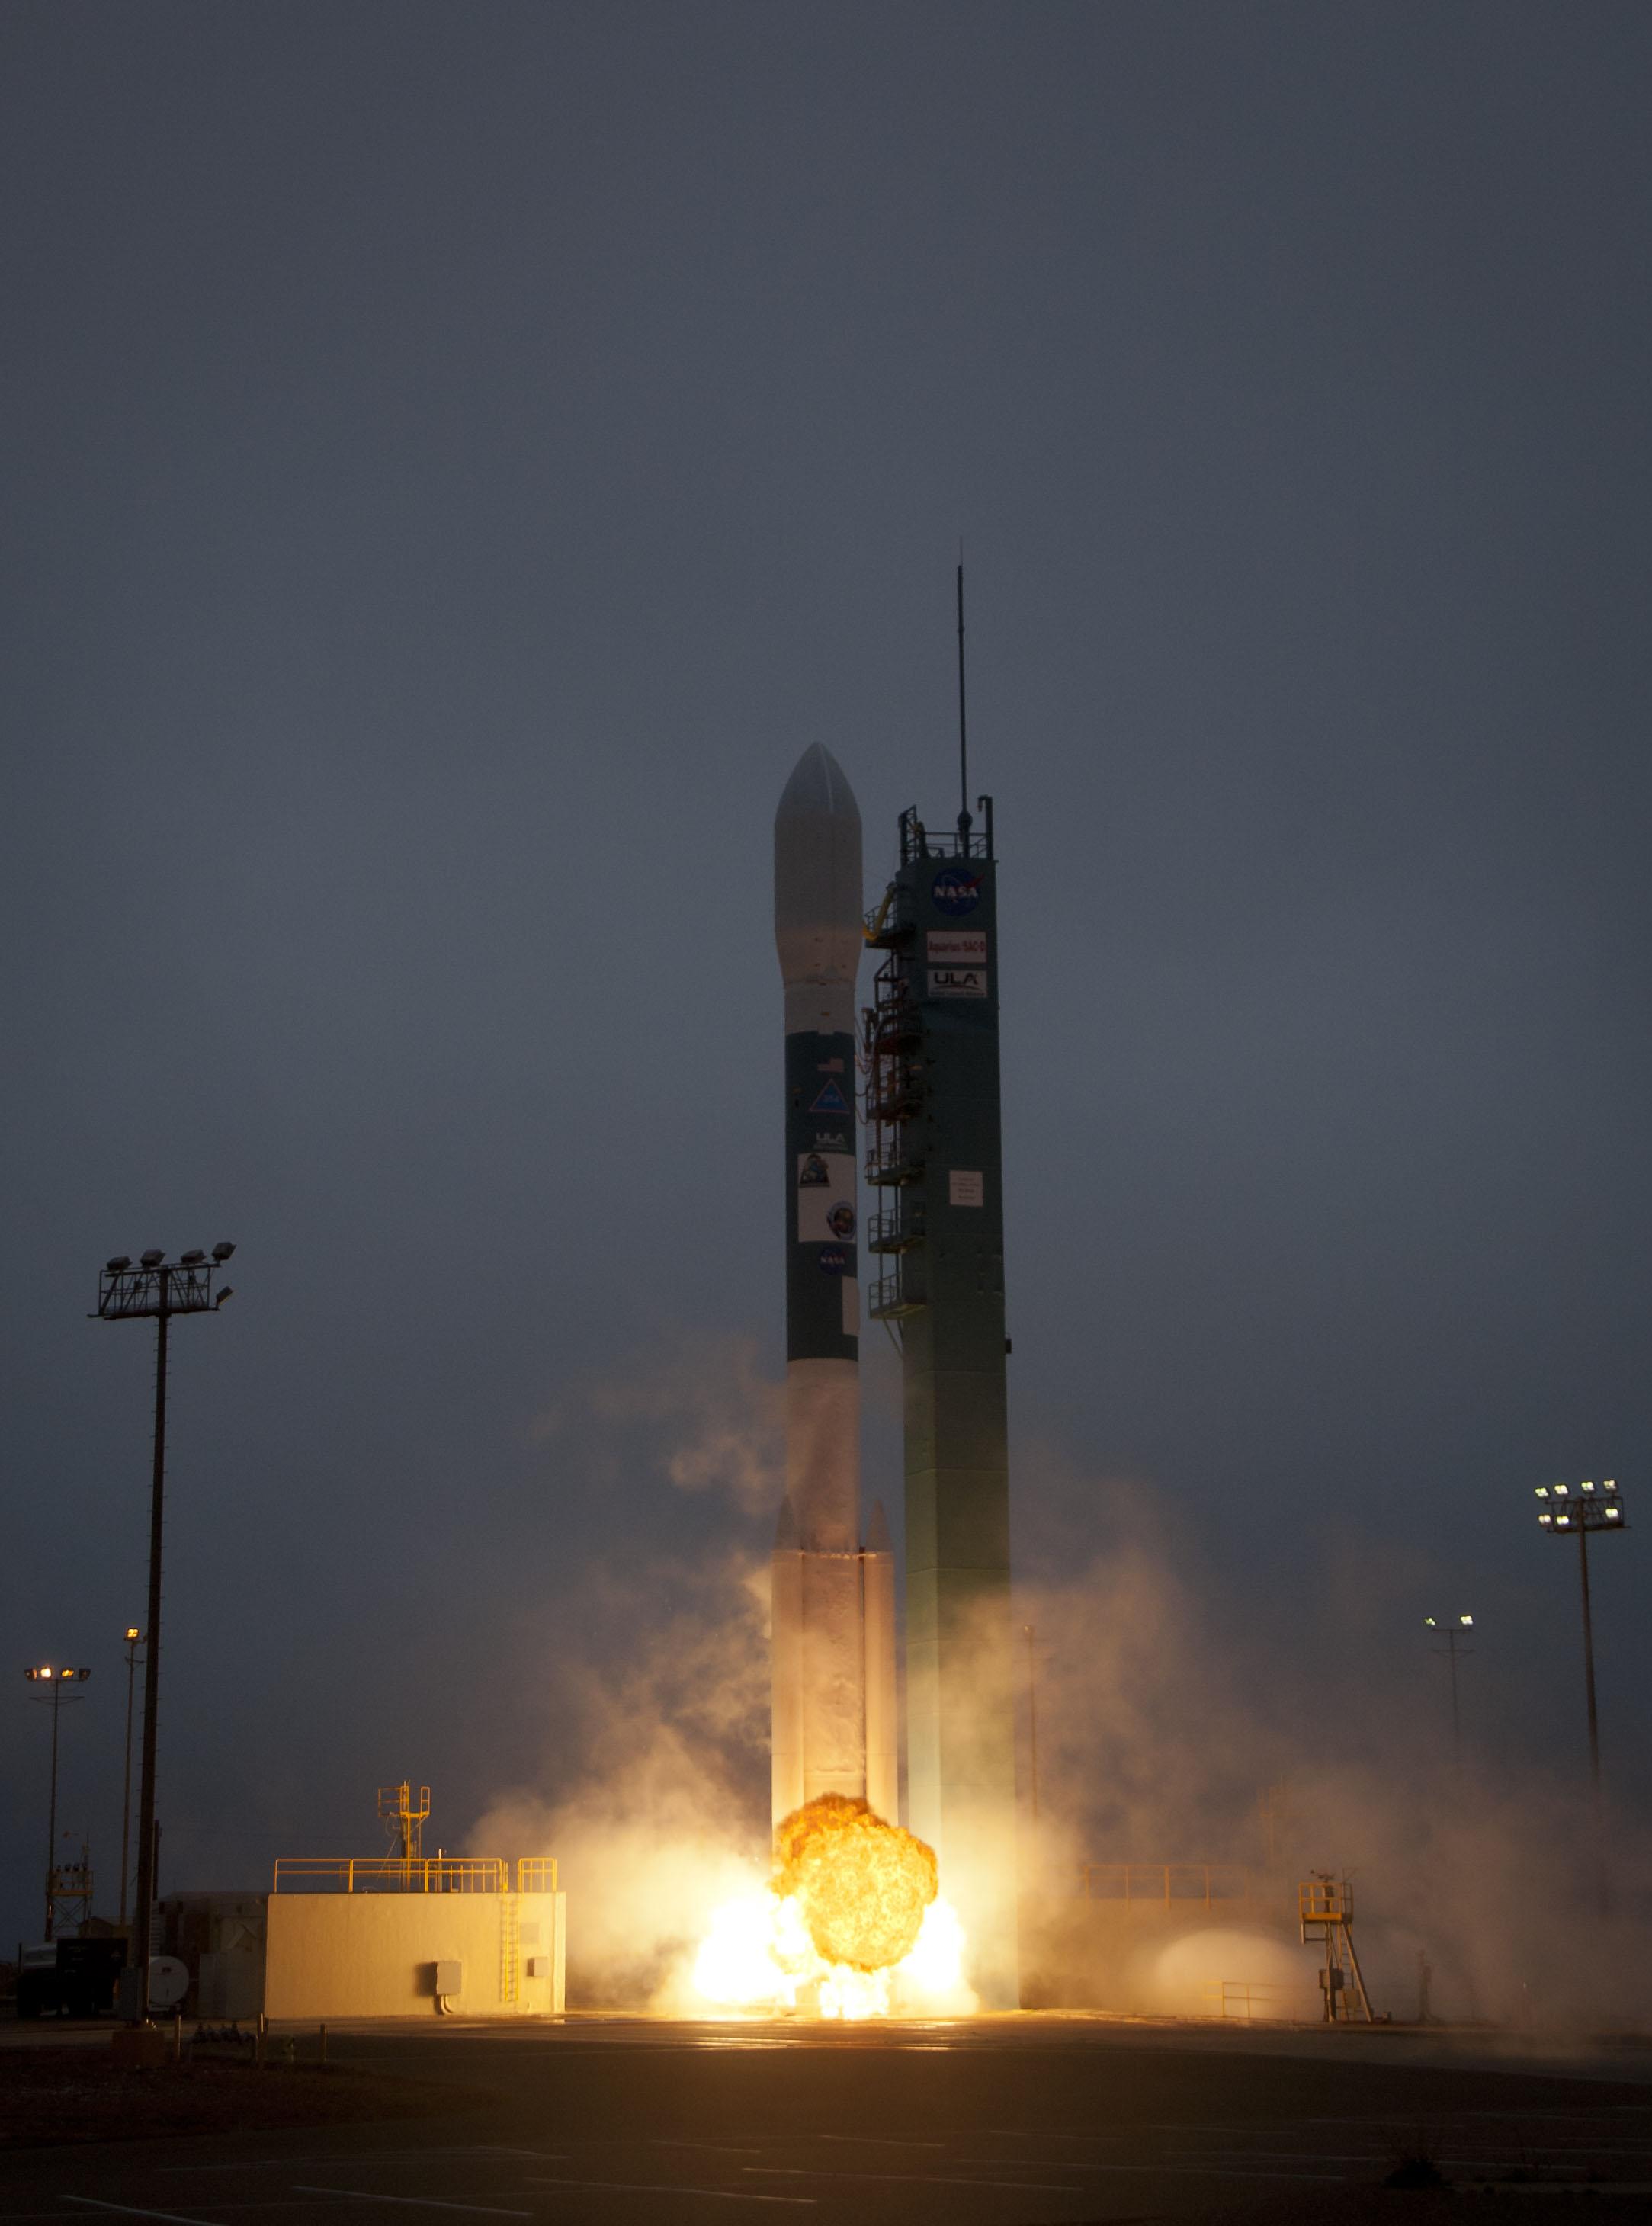 Aquarius launches with a Delta II rocket